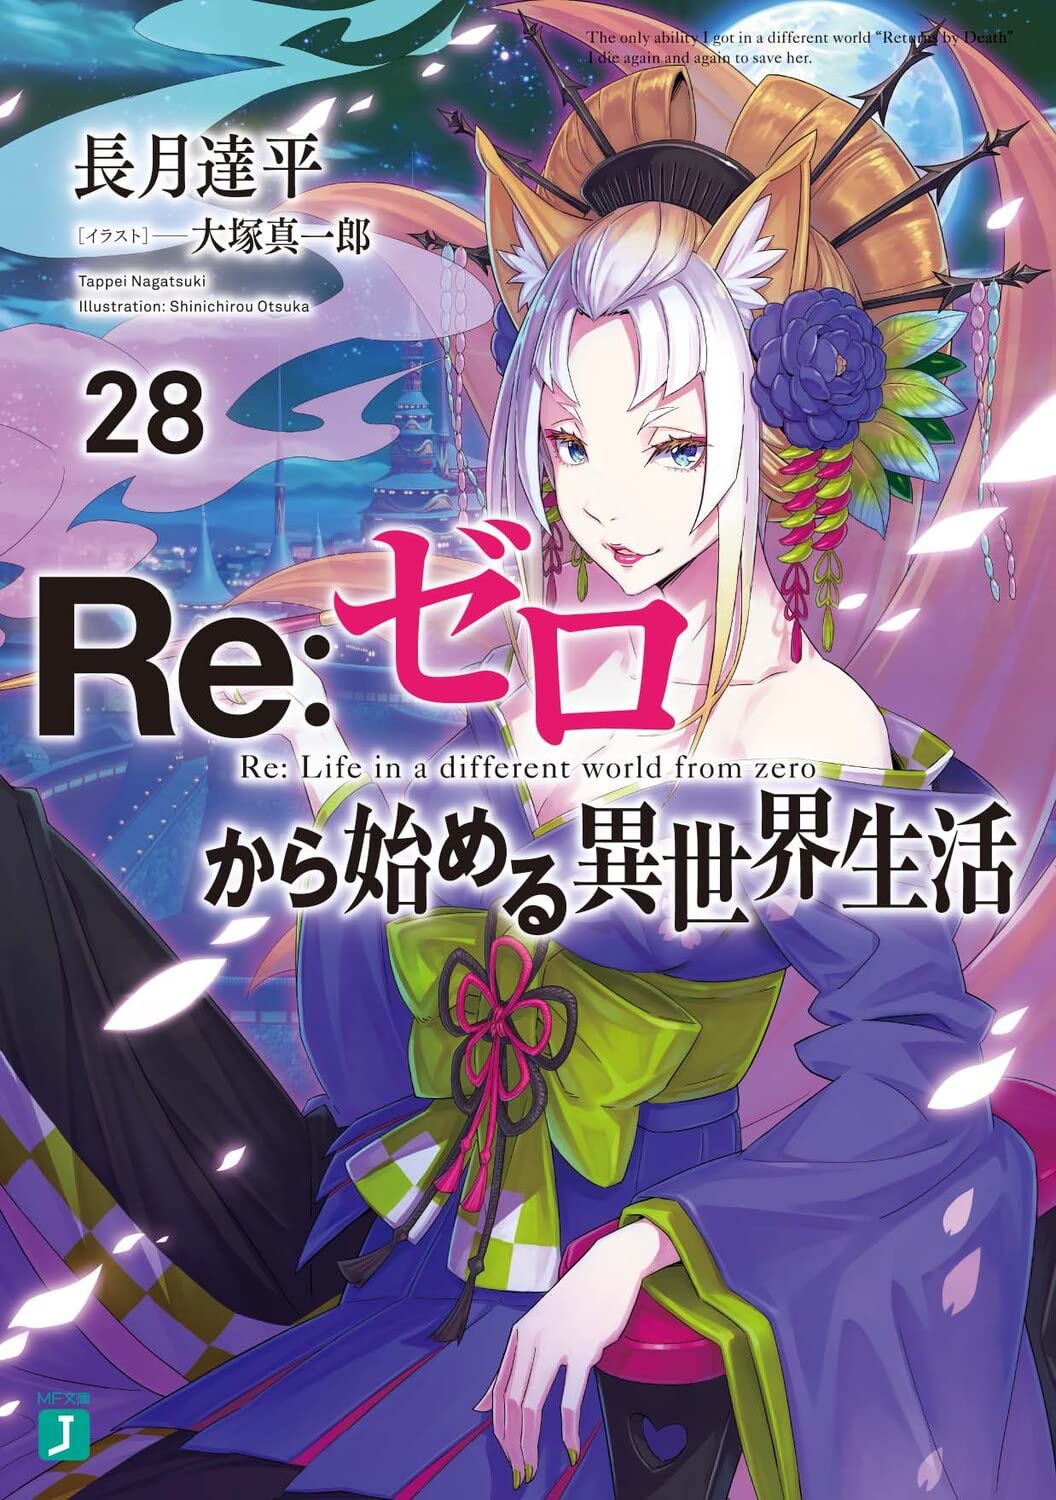 Novel de Re:Zero Kara Hajimeru Isekai Seikatsu chega a 1 milhão